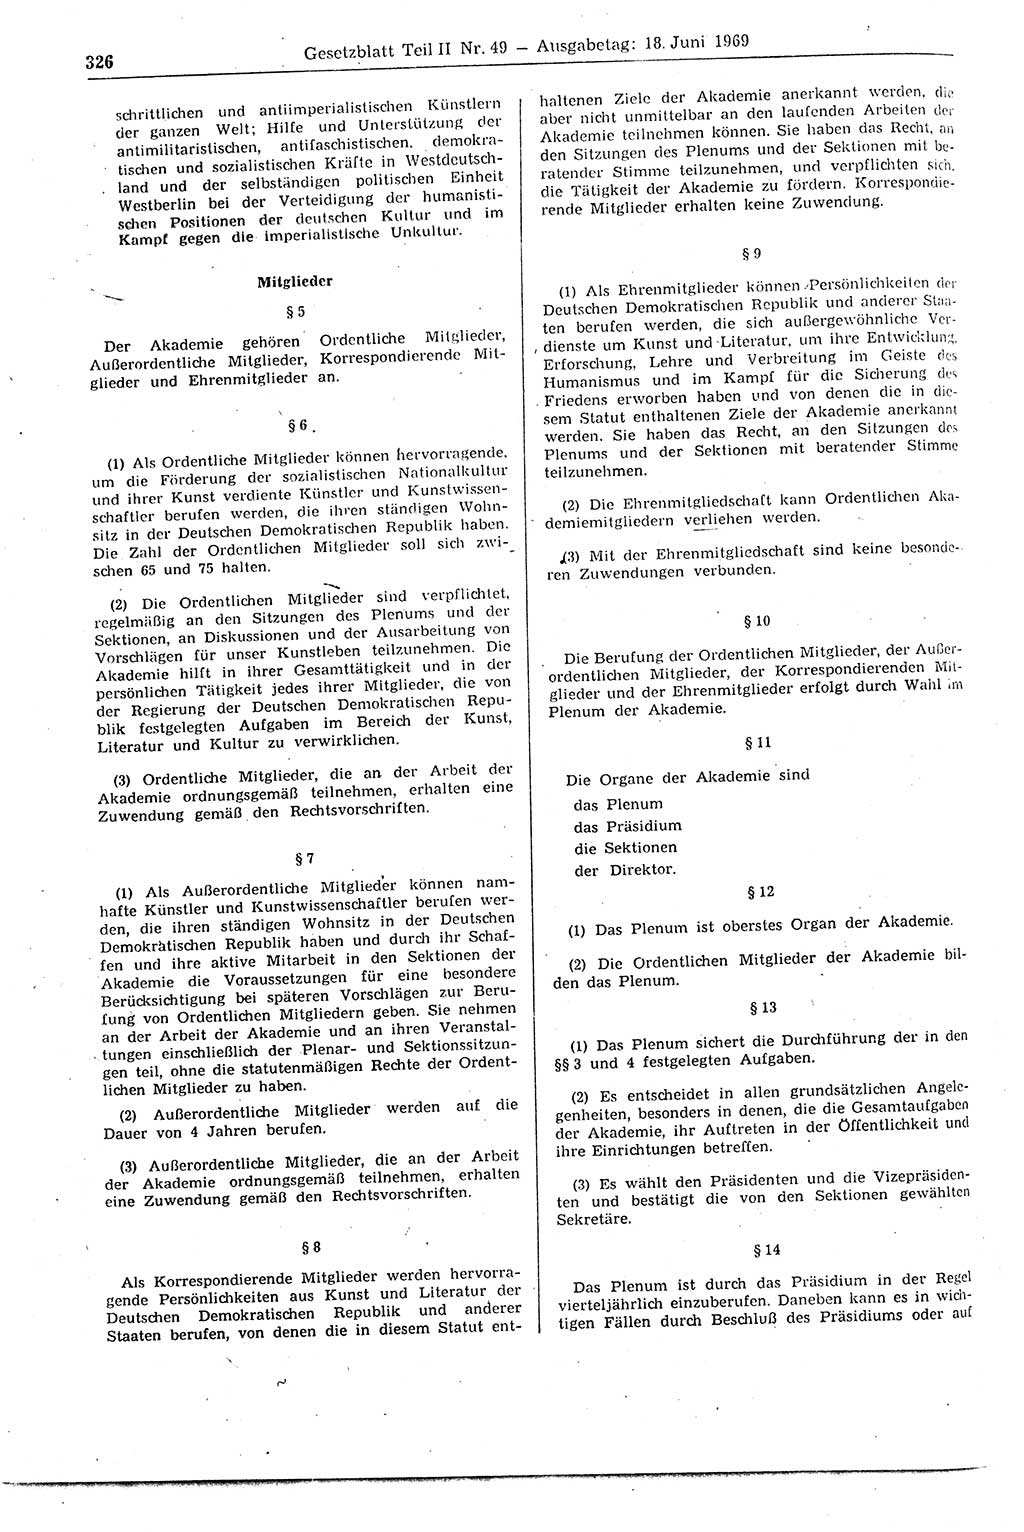 Gesetzblatt (GBl.) der Deutschen Demokratischen Republik (DDR) Teil ⅠⅠ 1969, Seite 326 (GBl. DDR ⅠⅠ 1969, S. 326)